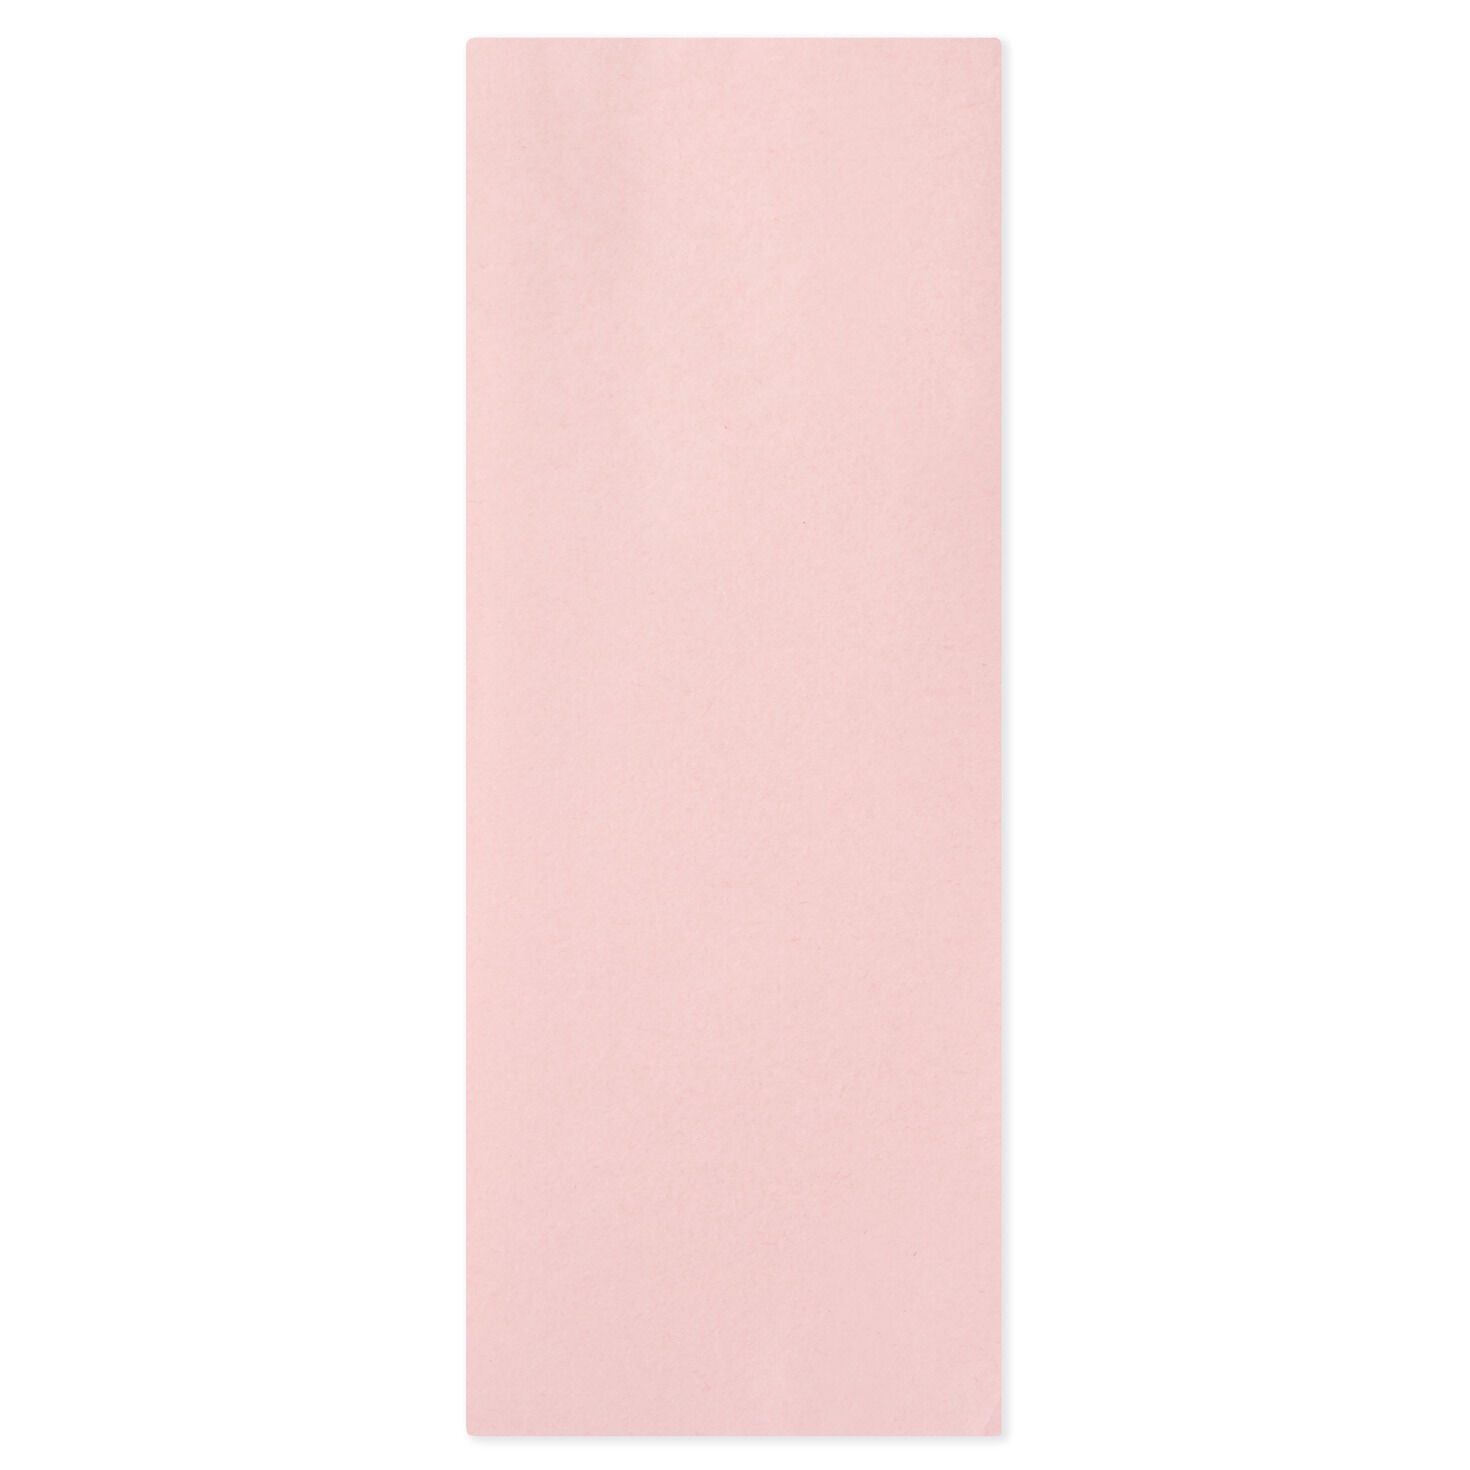 Pale Pink Tissue Paper, 8 Sheets - Tissue - Hallmark